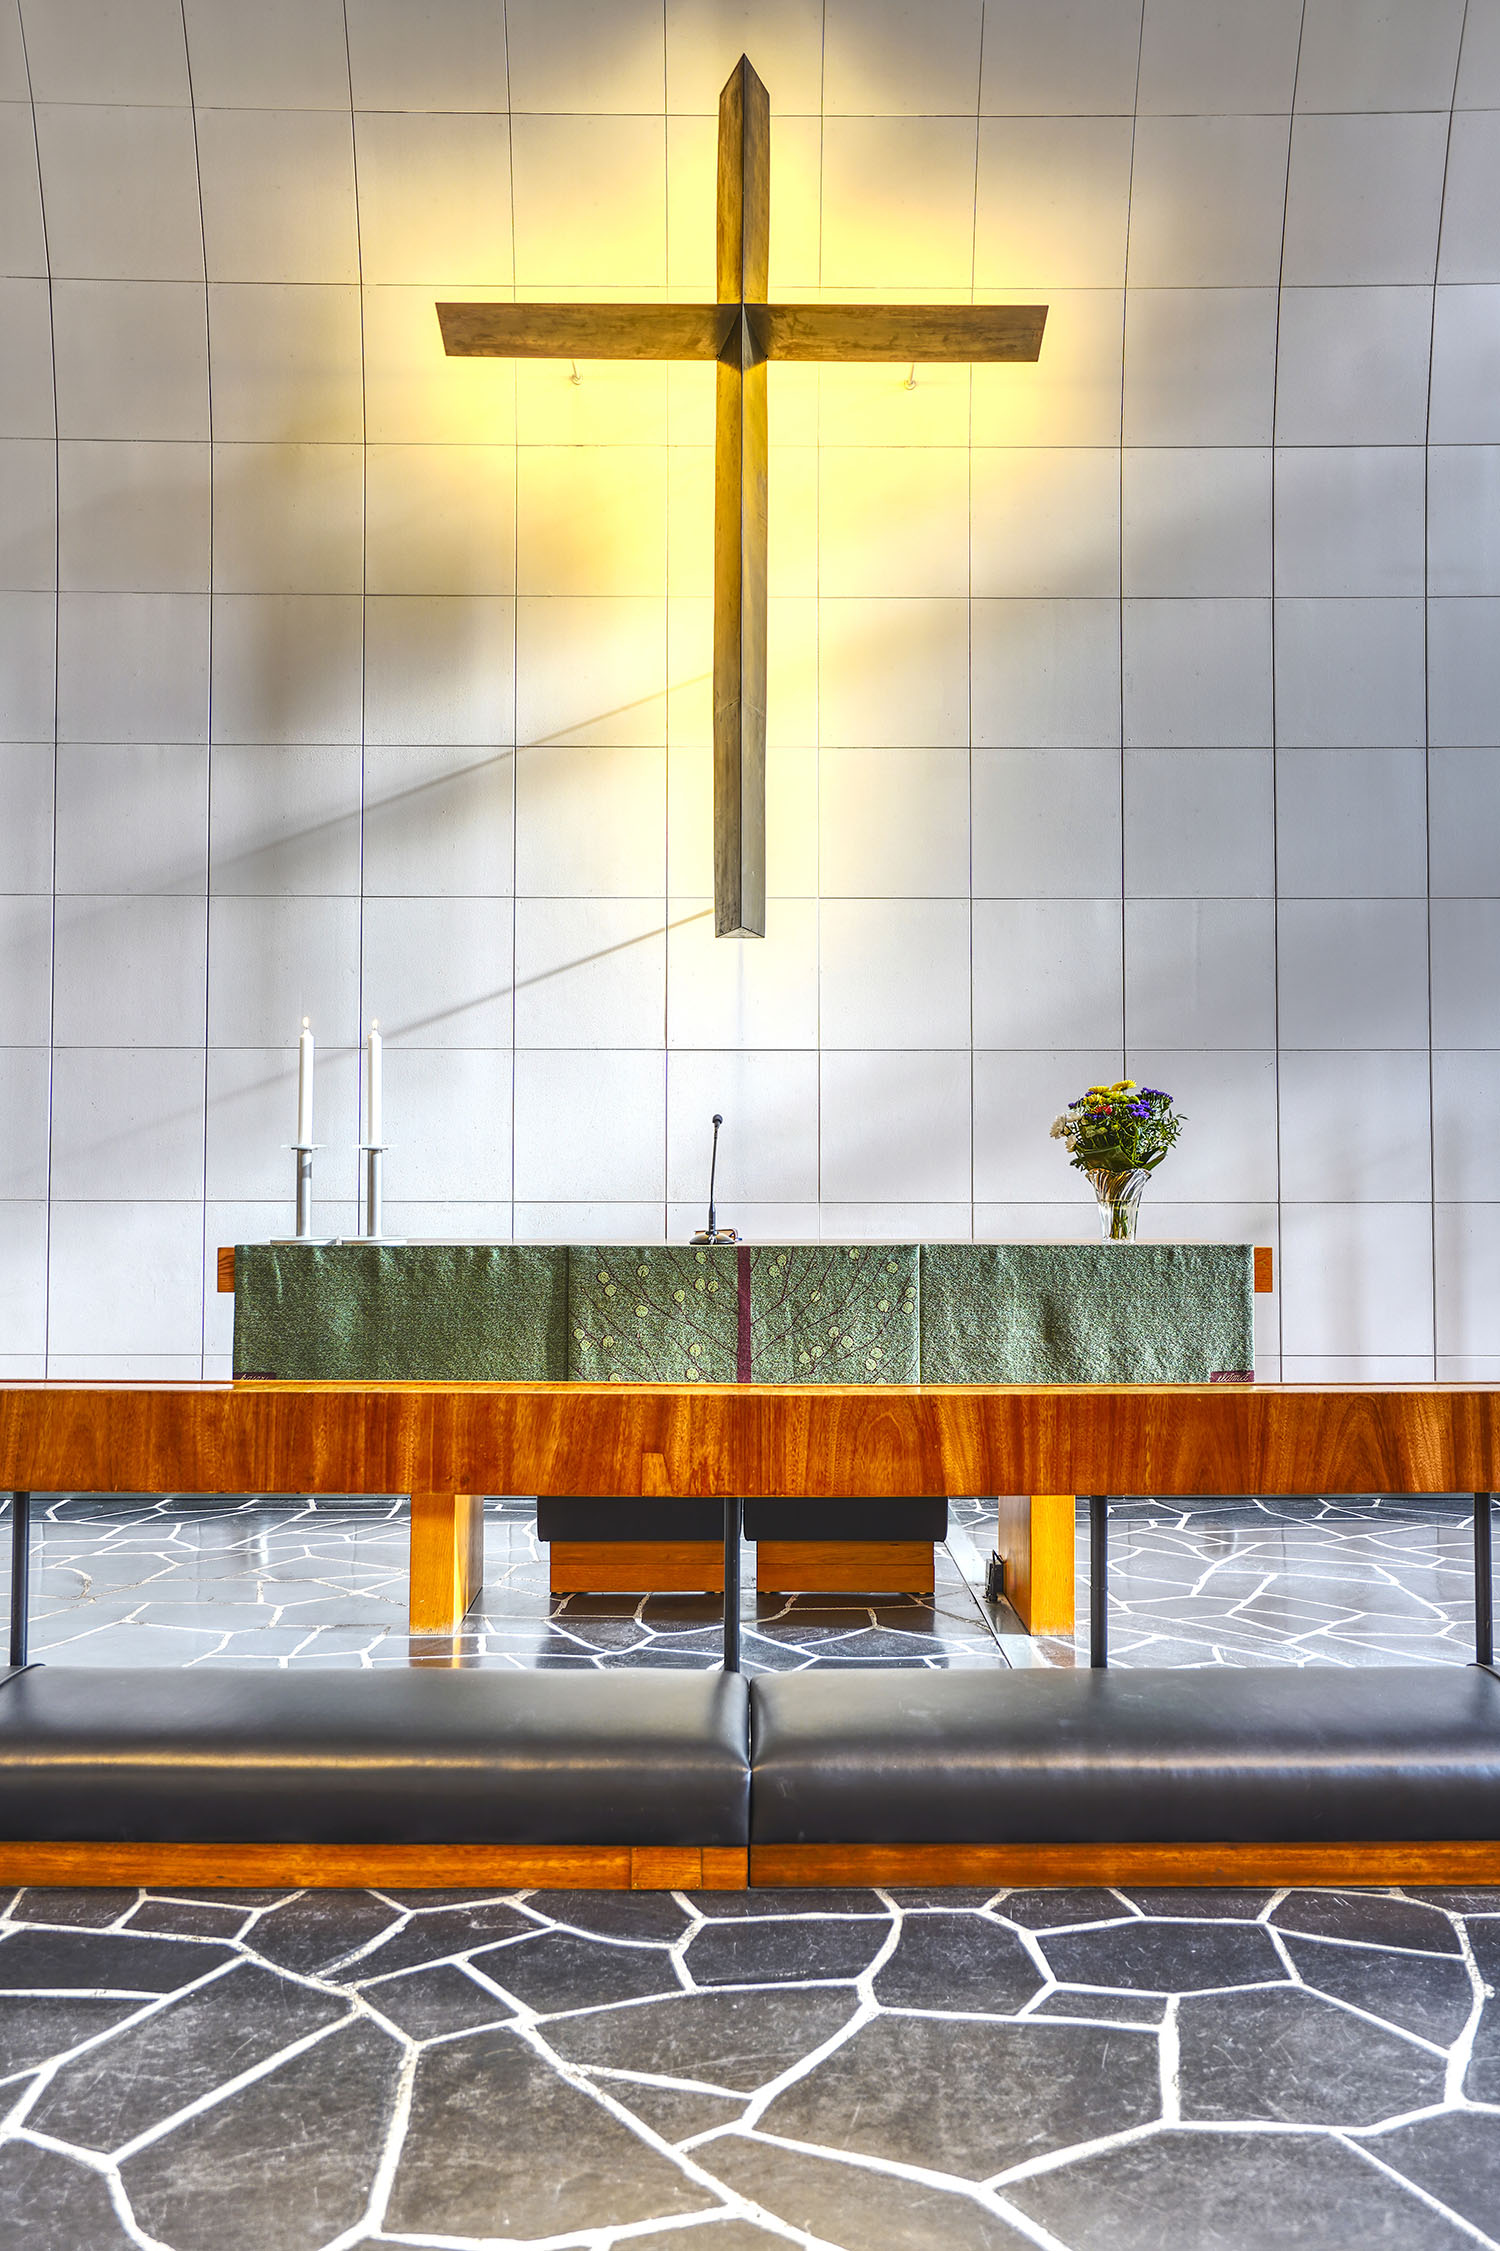 Meilahden kirkon alttarin kuva, jossa näkyy risti